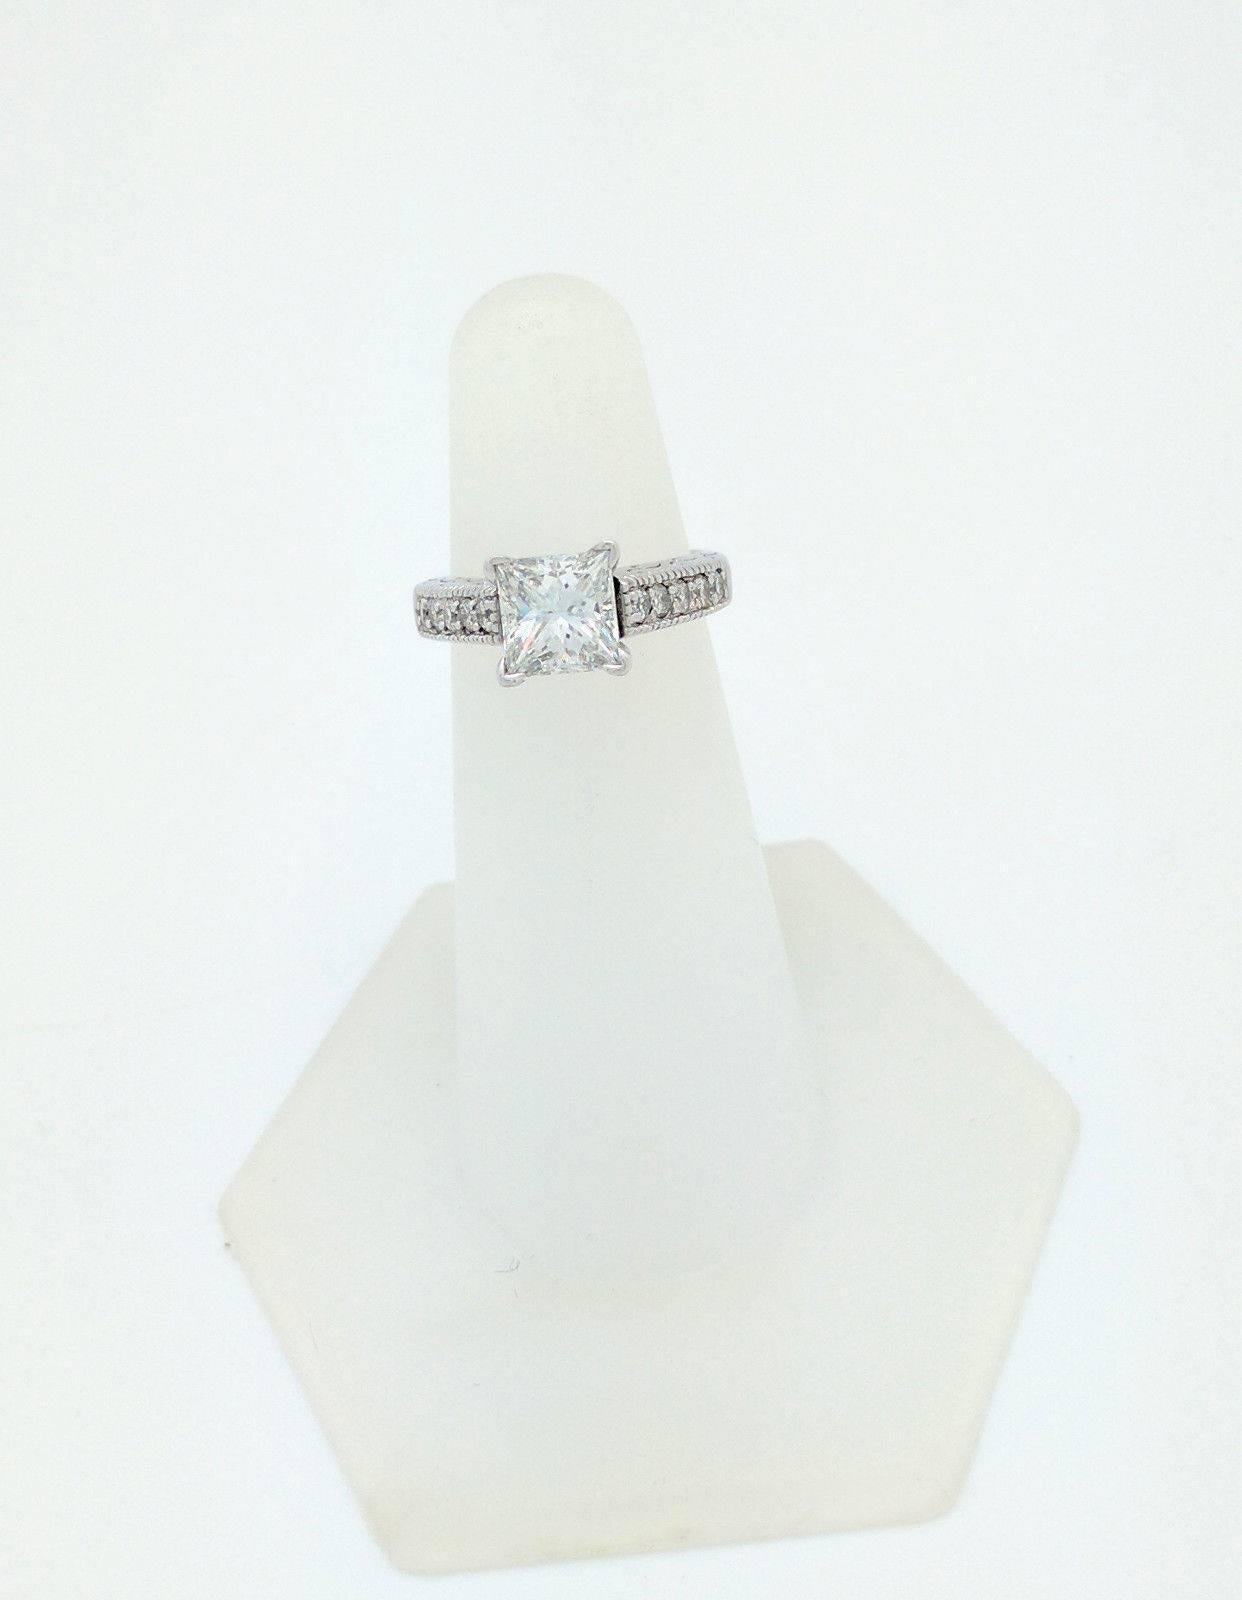 14 Karat White Gold 1.85 Carat Princess Cut Diamond Engagement Ring VS2/H 1